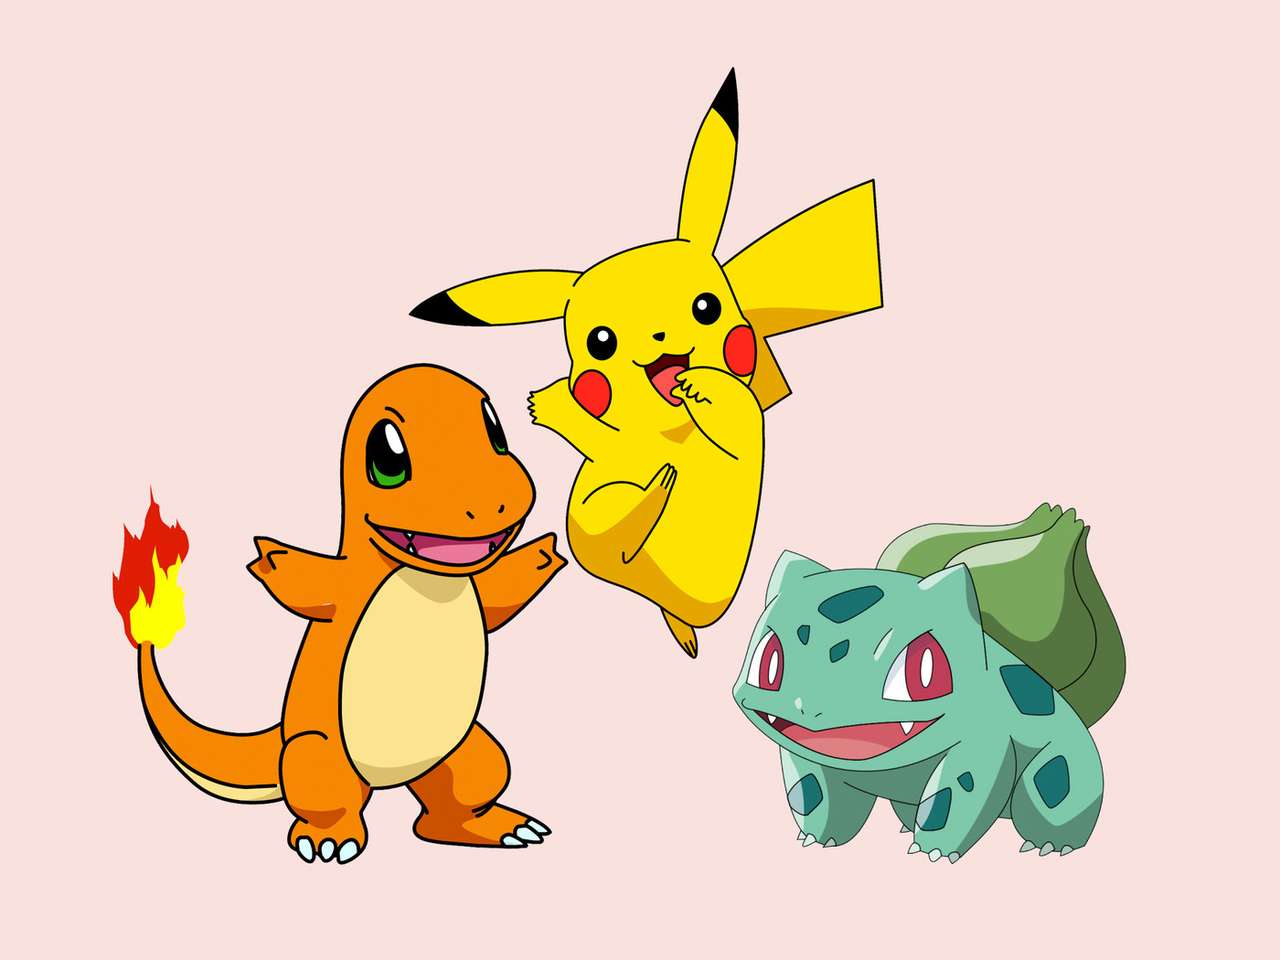 παζλ pokemon pikachu charizard και bulbasaur παζλ online